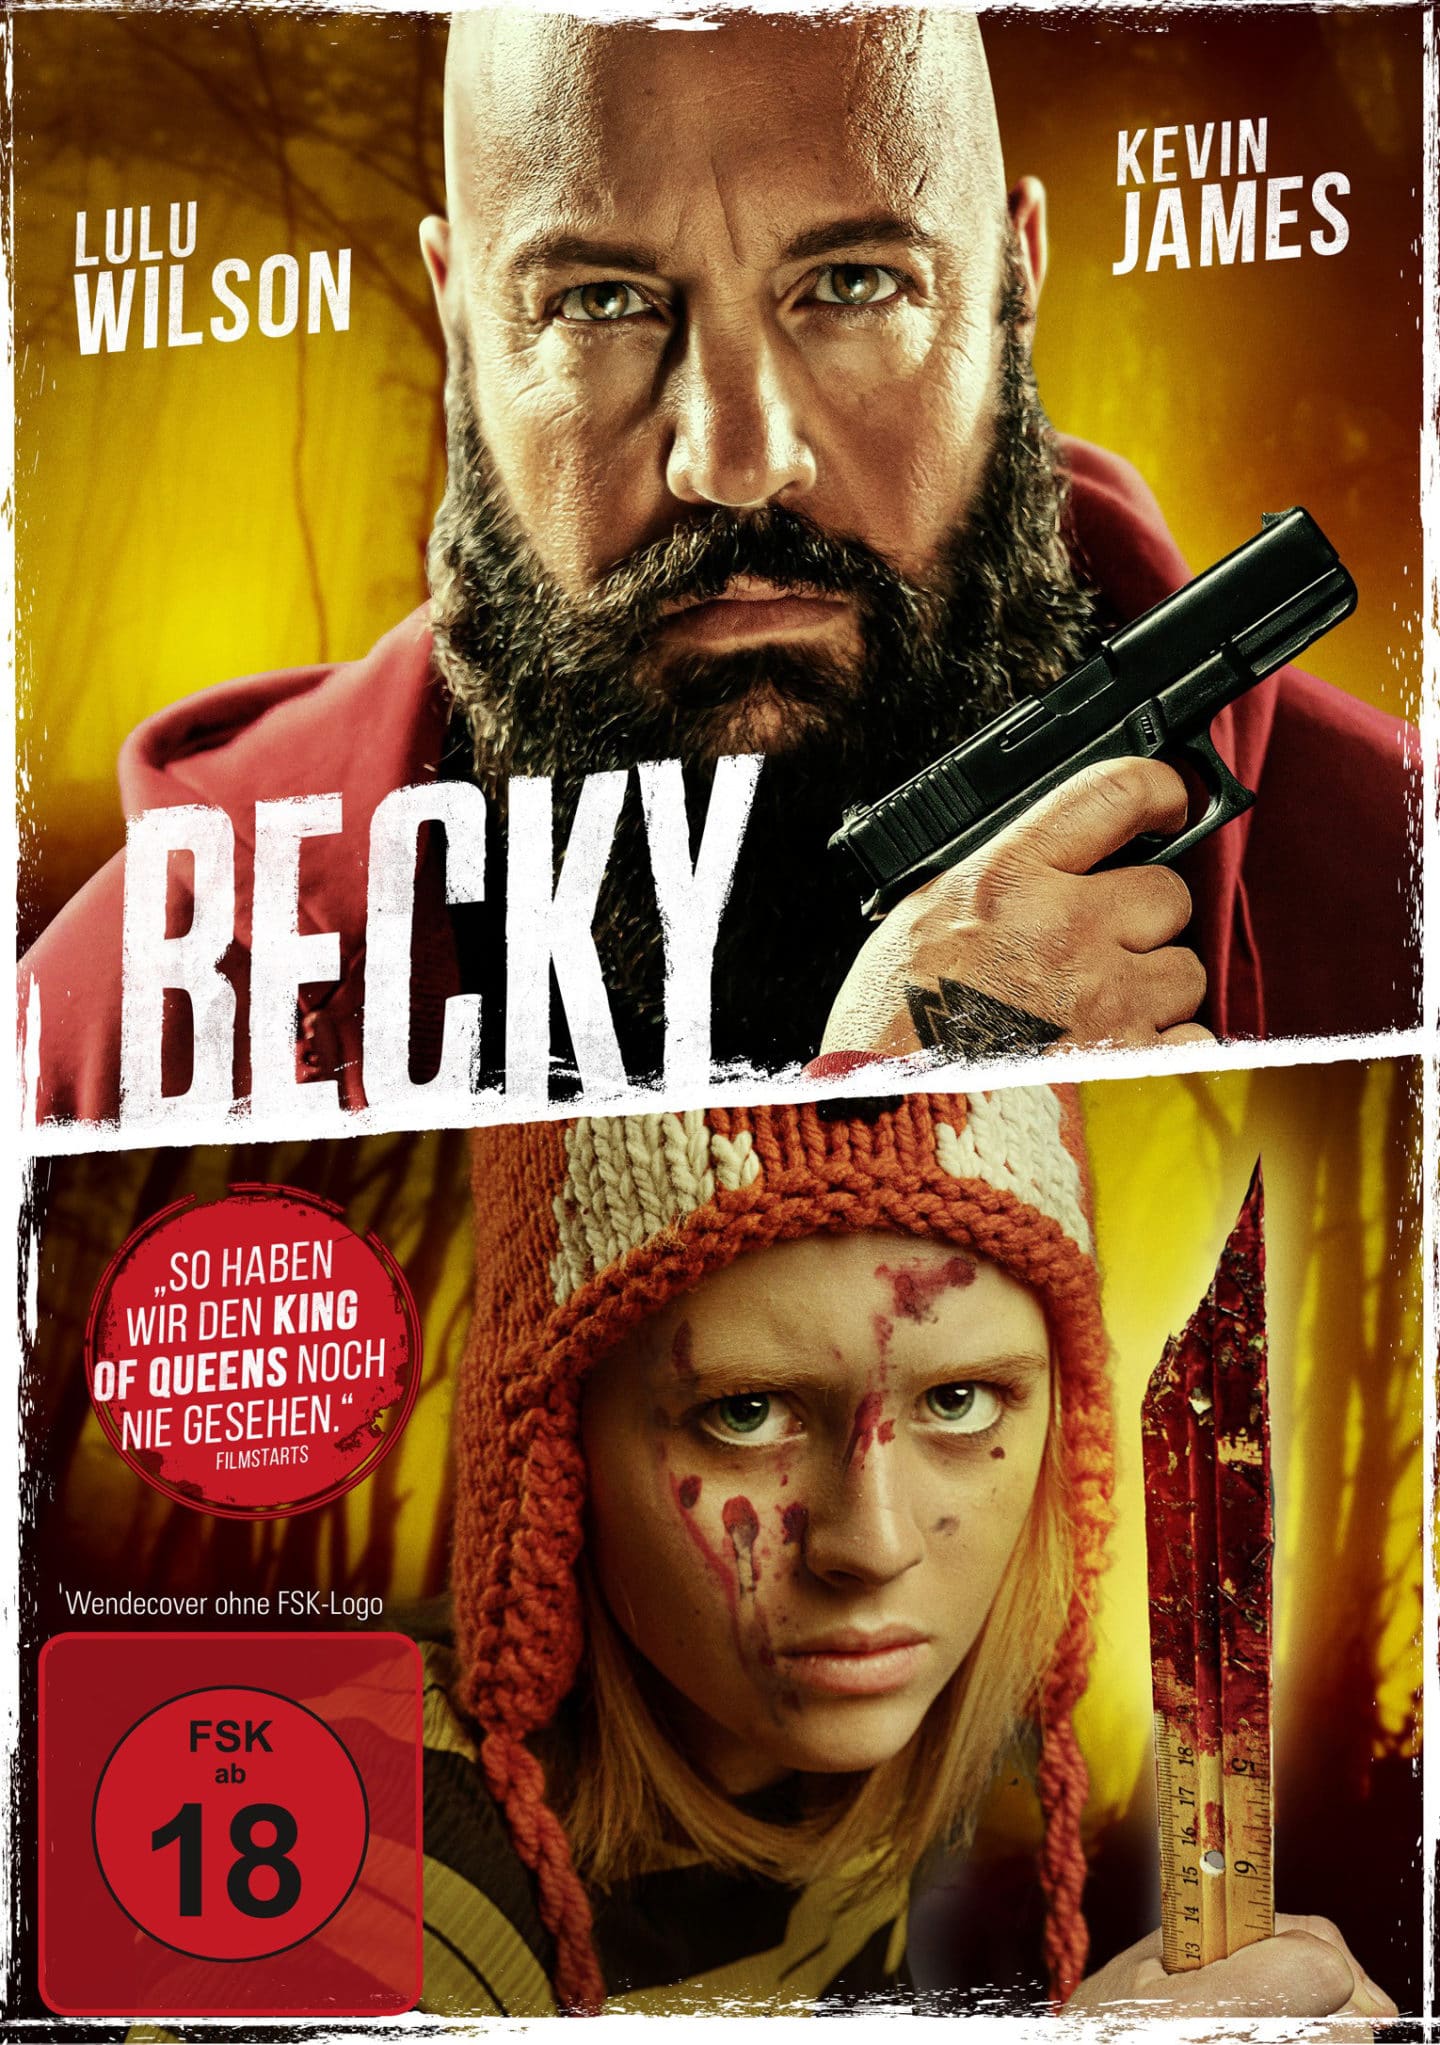 Becky - DVD Cover